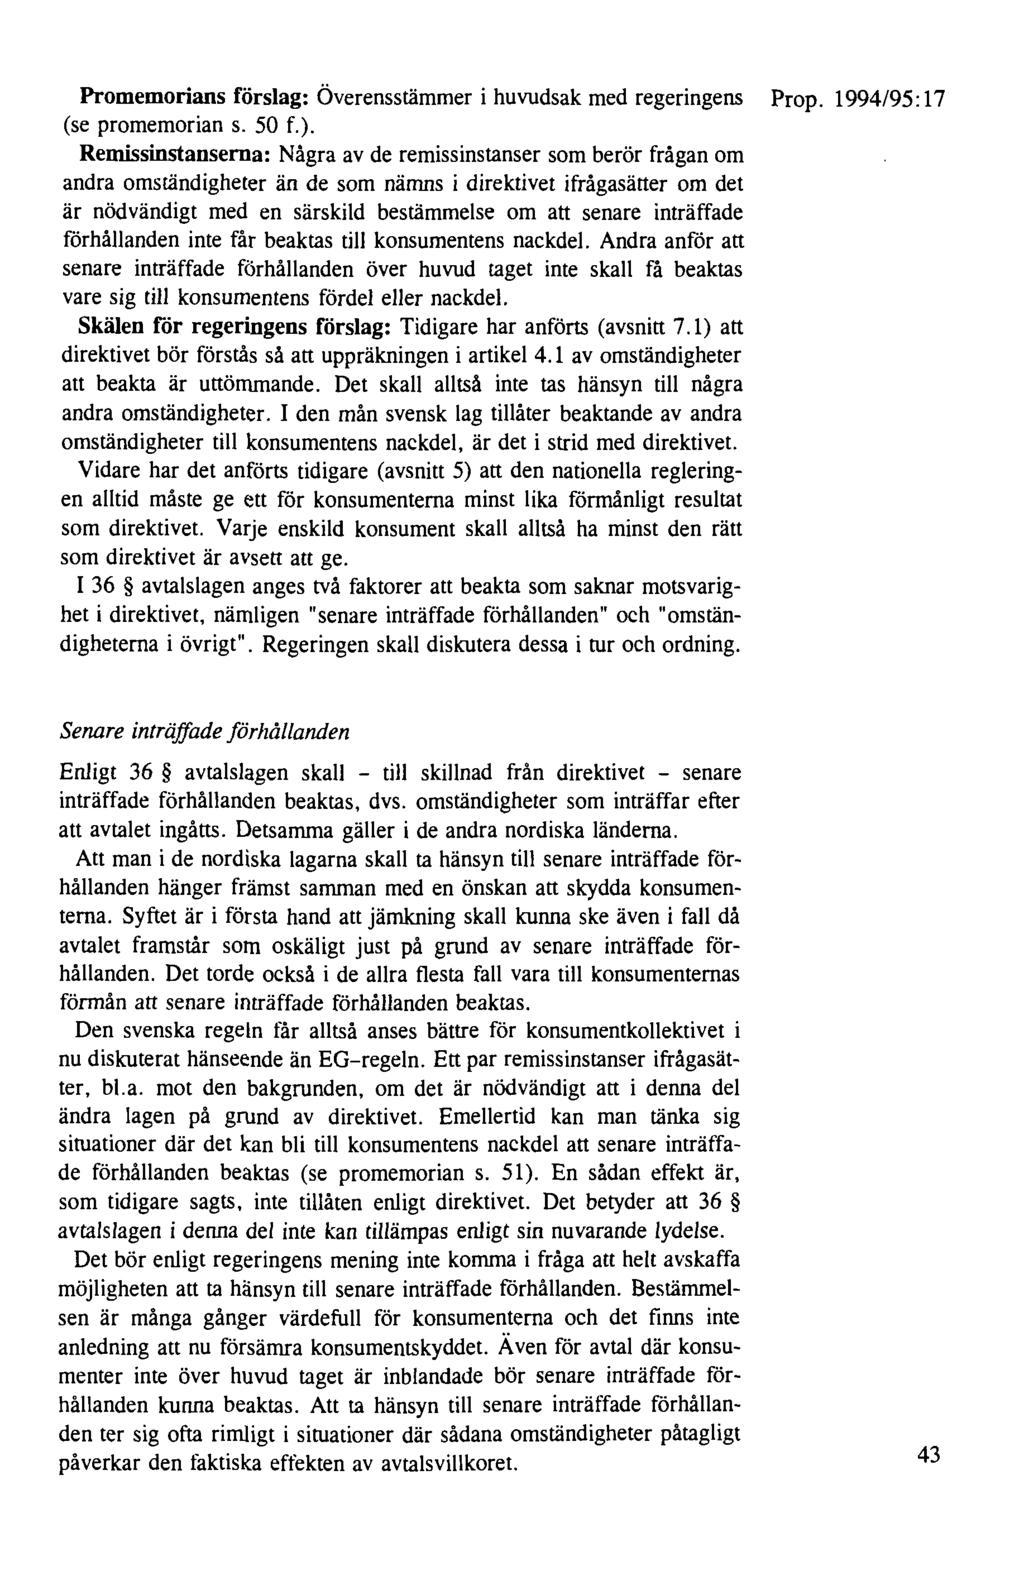 Promemorians förslag: Överensstämmer i huvudsak med regeringens Prop. 1994/95:17 (se promemorian s. 50 f.).